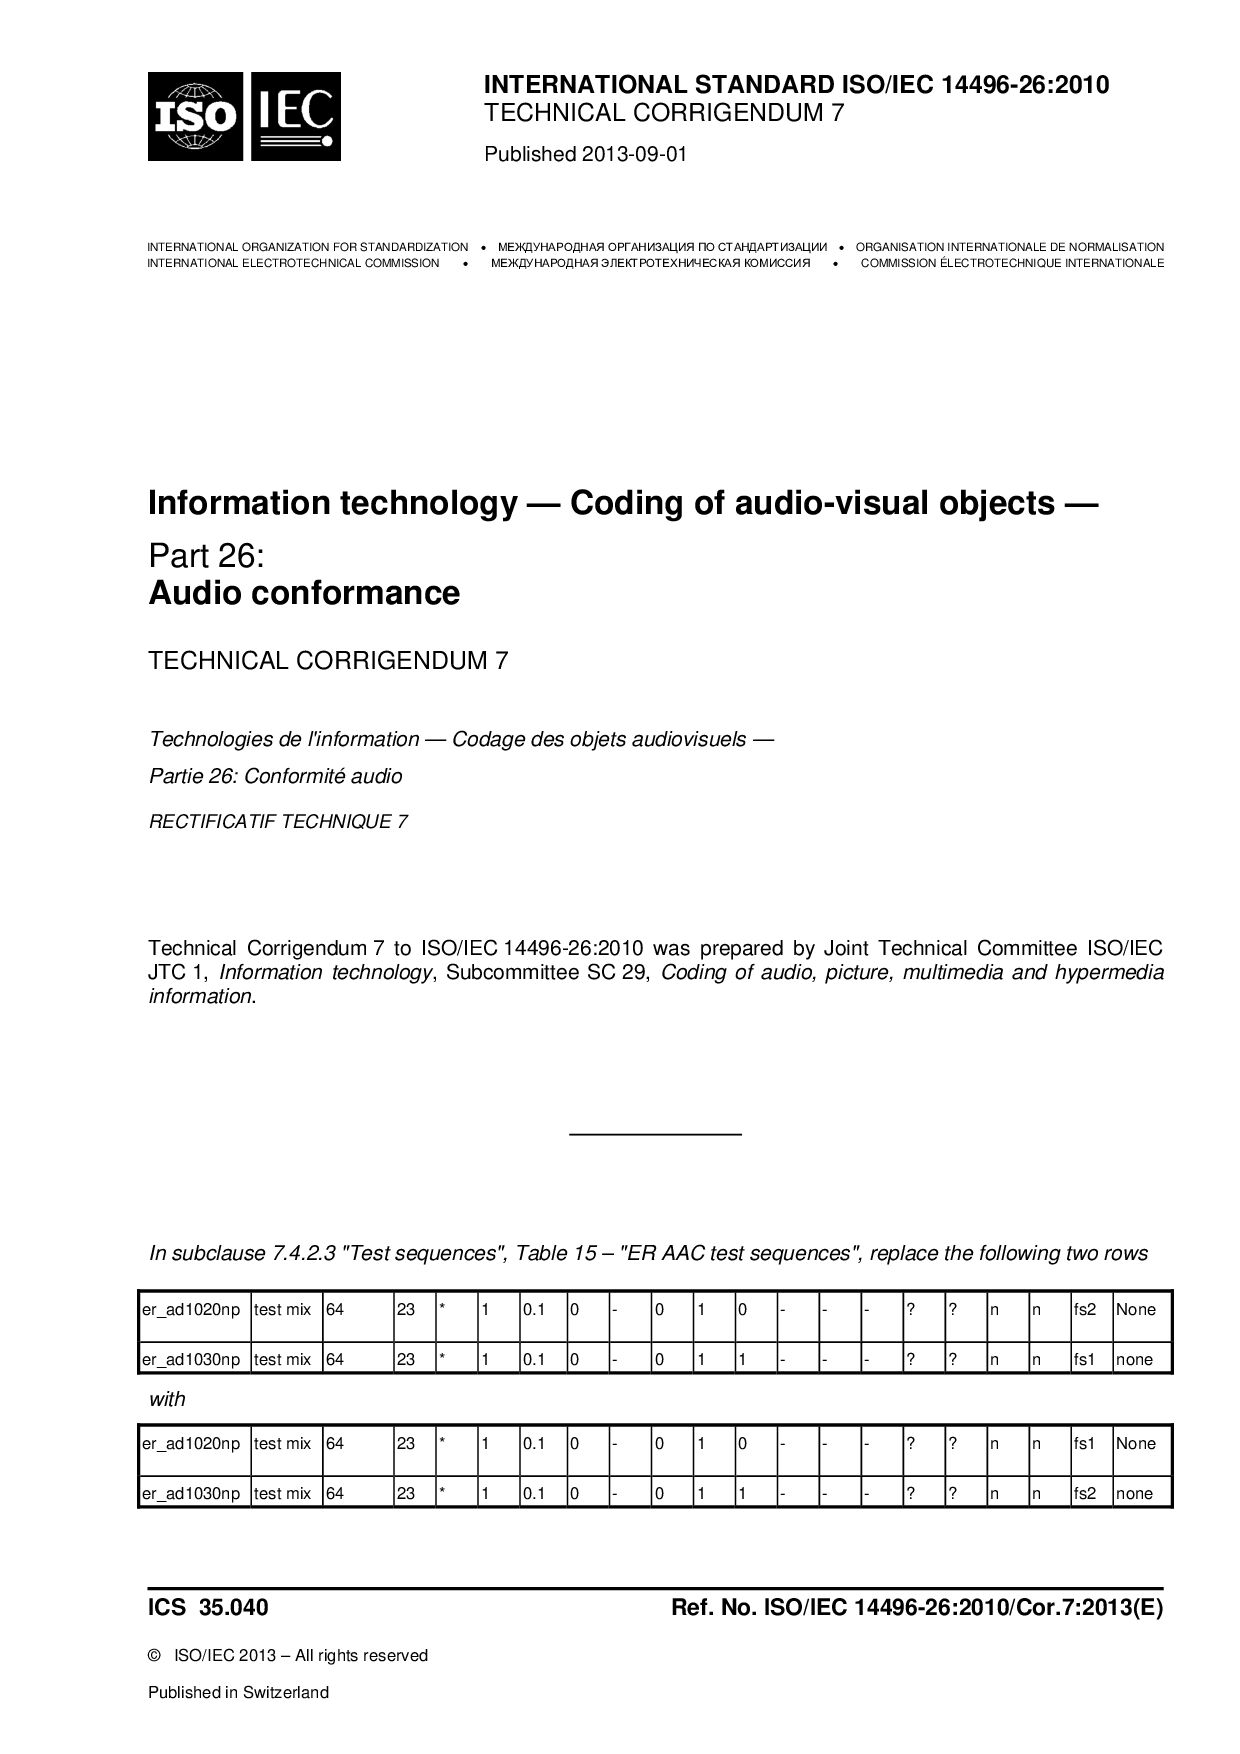 ISO/IEC 14496-26:2010/Cor 7:2013封面图